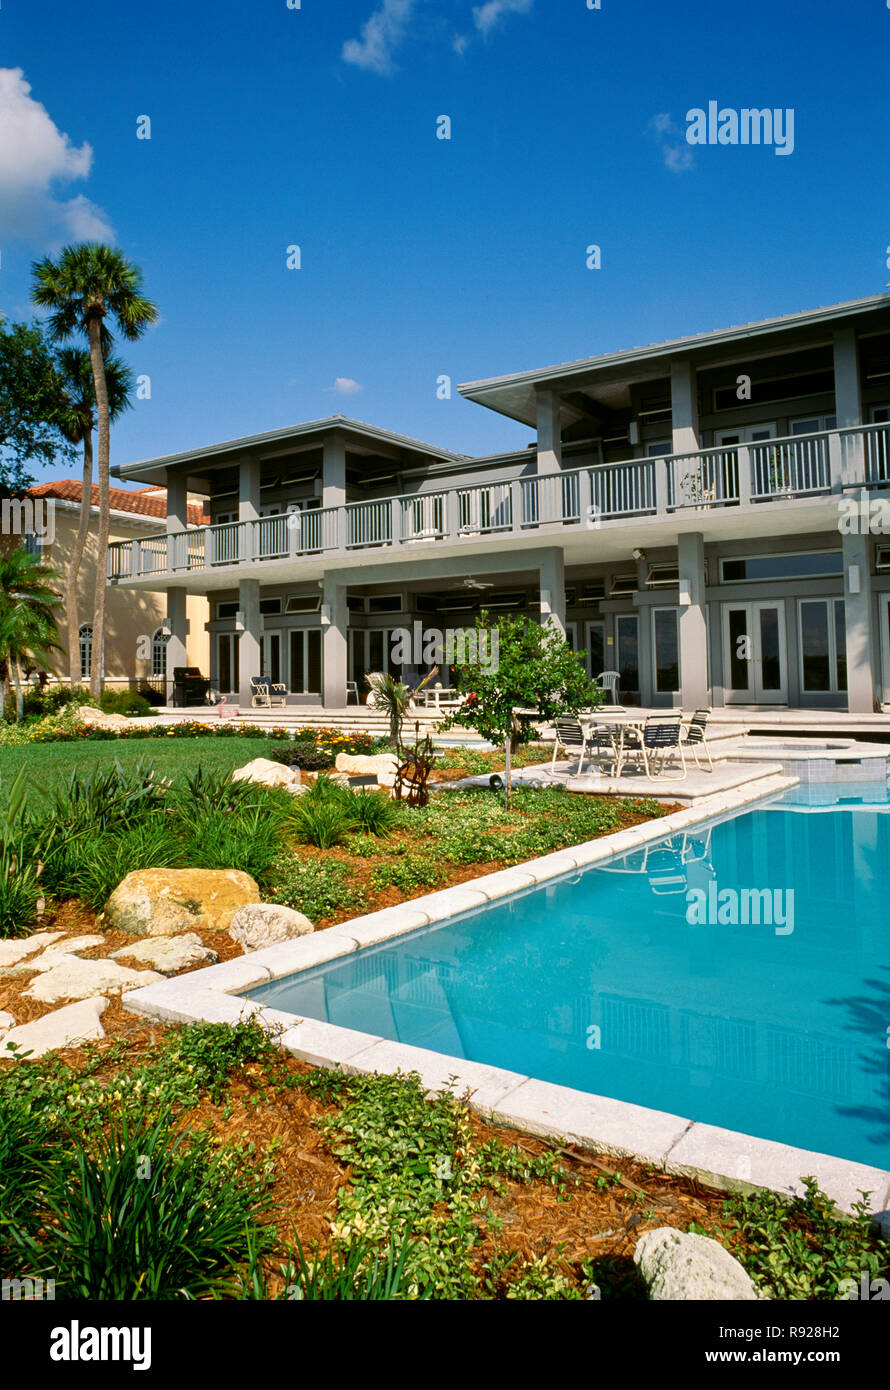 Vitrine de luxe accueil avec l'aménagement paysager entourant une piscine concepteur en arrière-cour, Florida, USA Banque D'Images